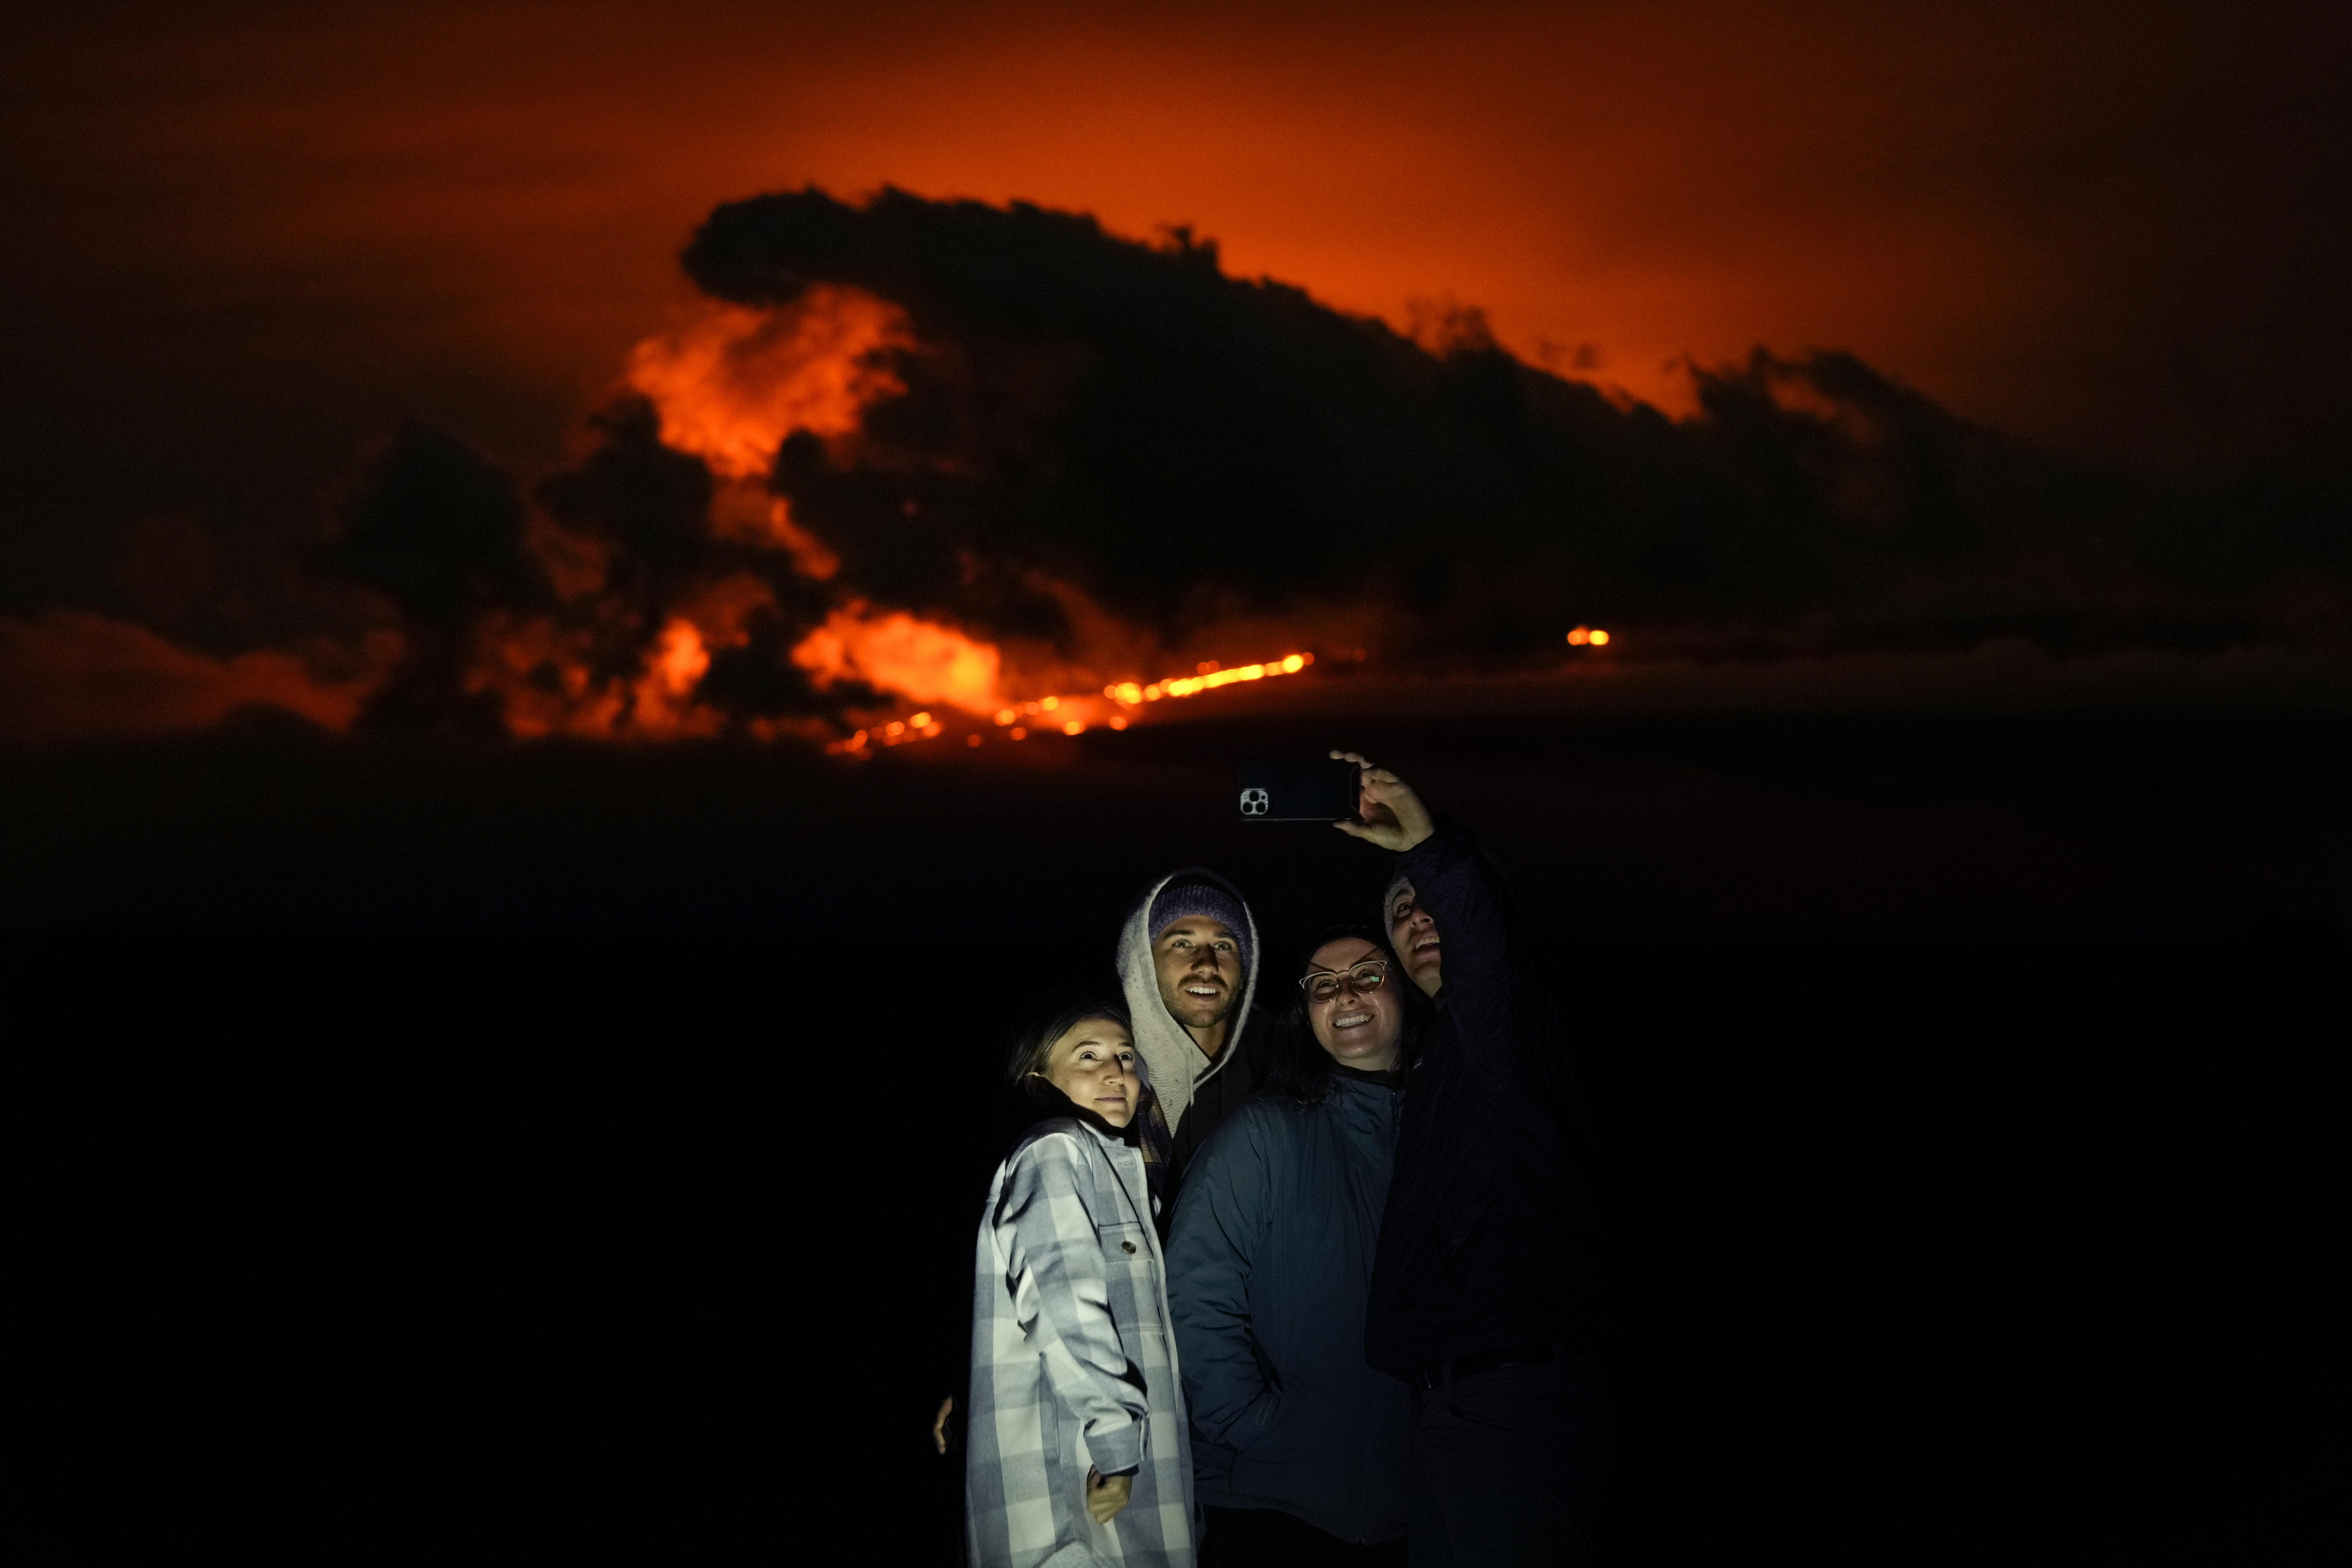 Ashlyn Nadeau, a la izquierda, junto a su esposo, Casey Nadeau, segundo desde la izquierda; Jessica Doyle, segunda desde la derecha, y Justin Potter, a la derecha, mientras toman una foto debajo del volcán Mauna Loa en erupción el viernes, cerca de Hilo, Hawái. (Foto AP/Gregory Bull)